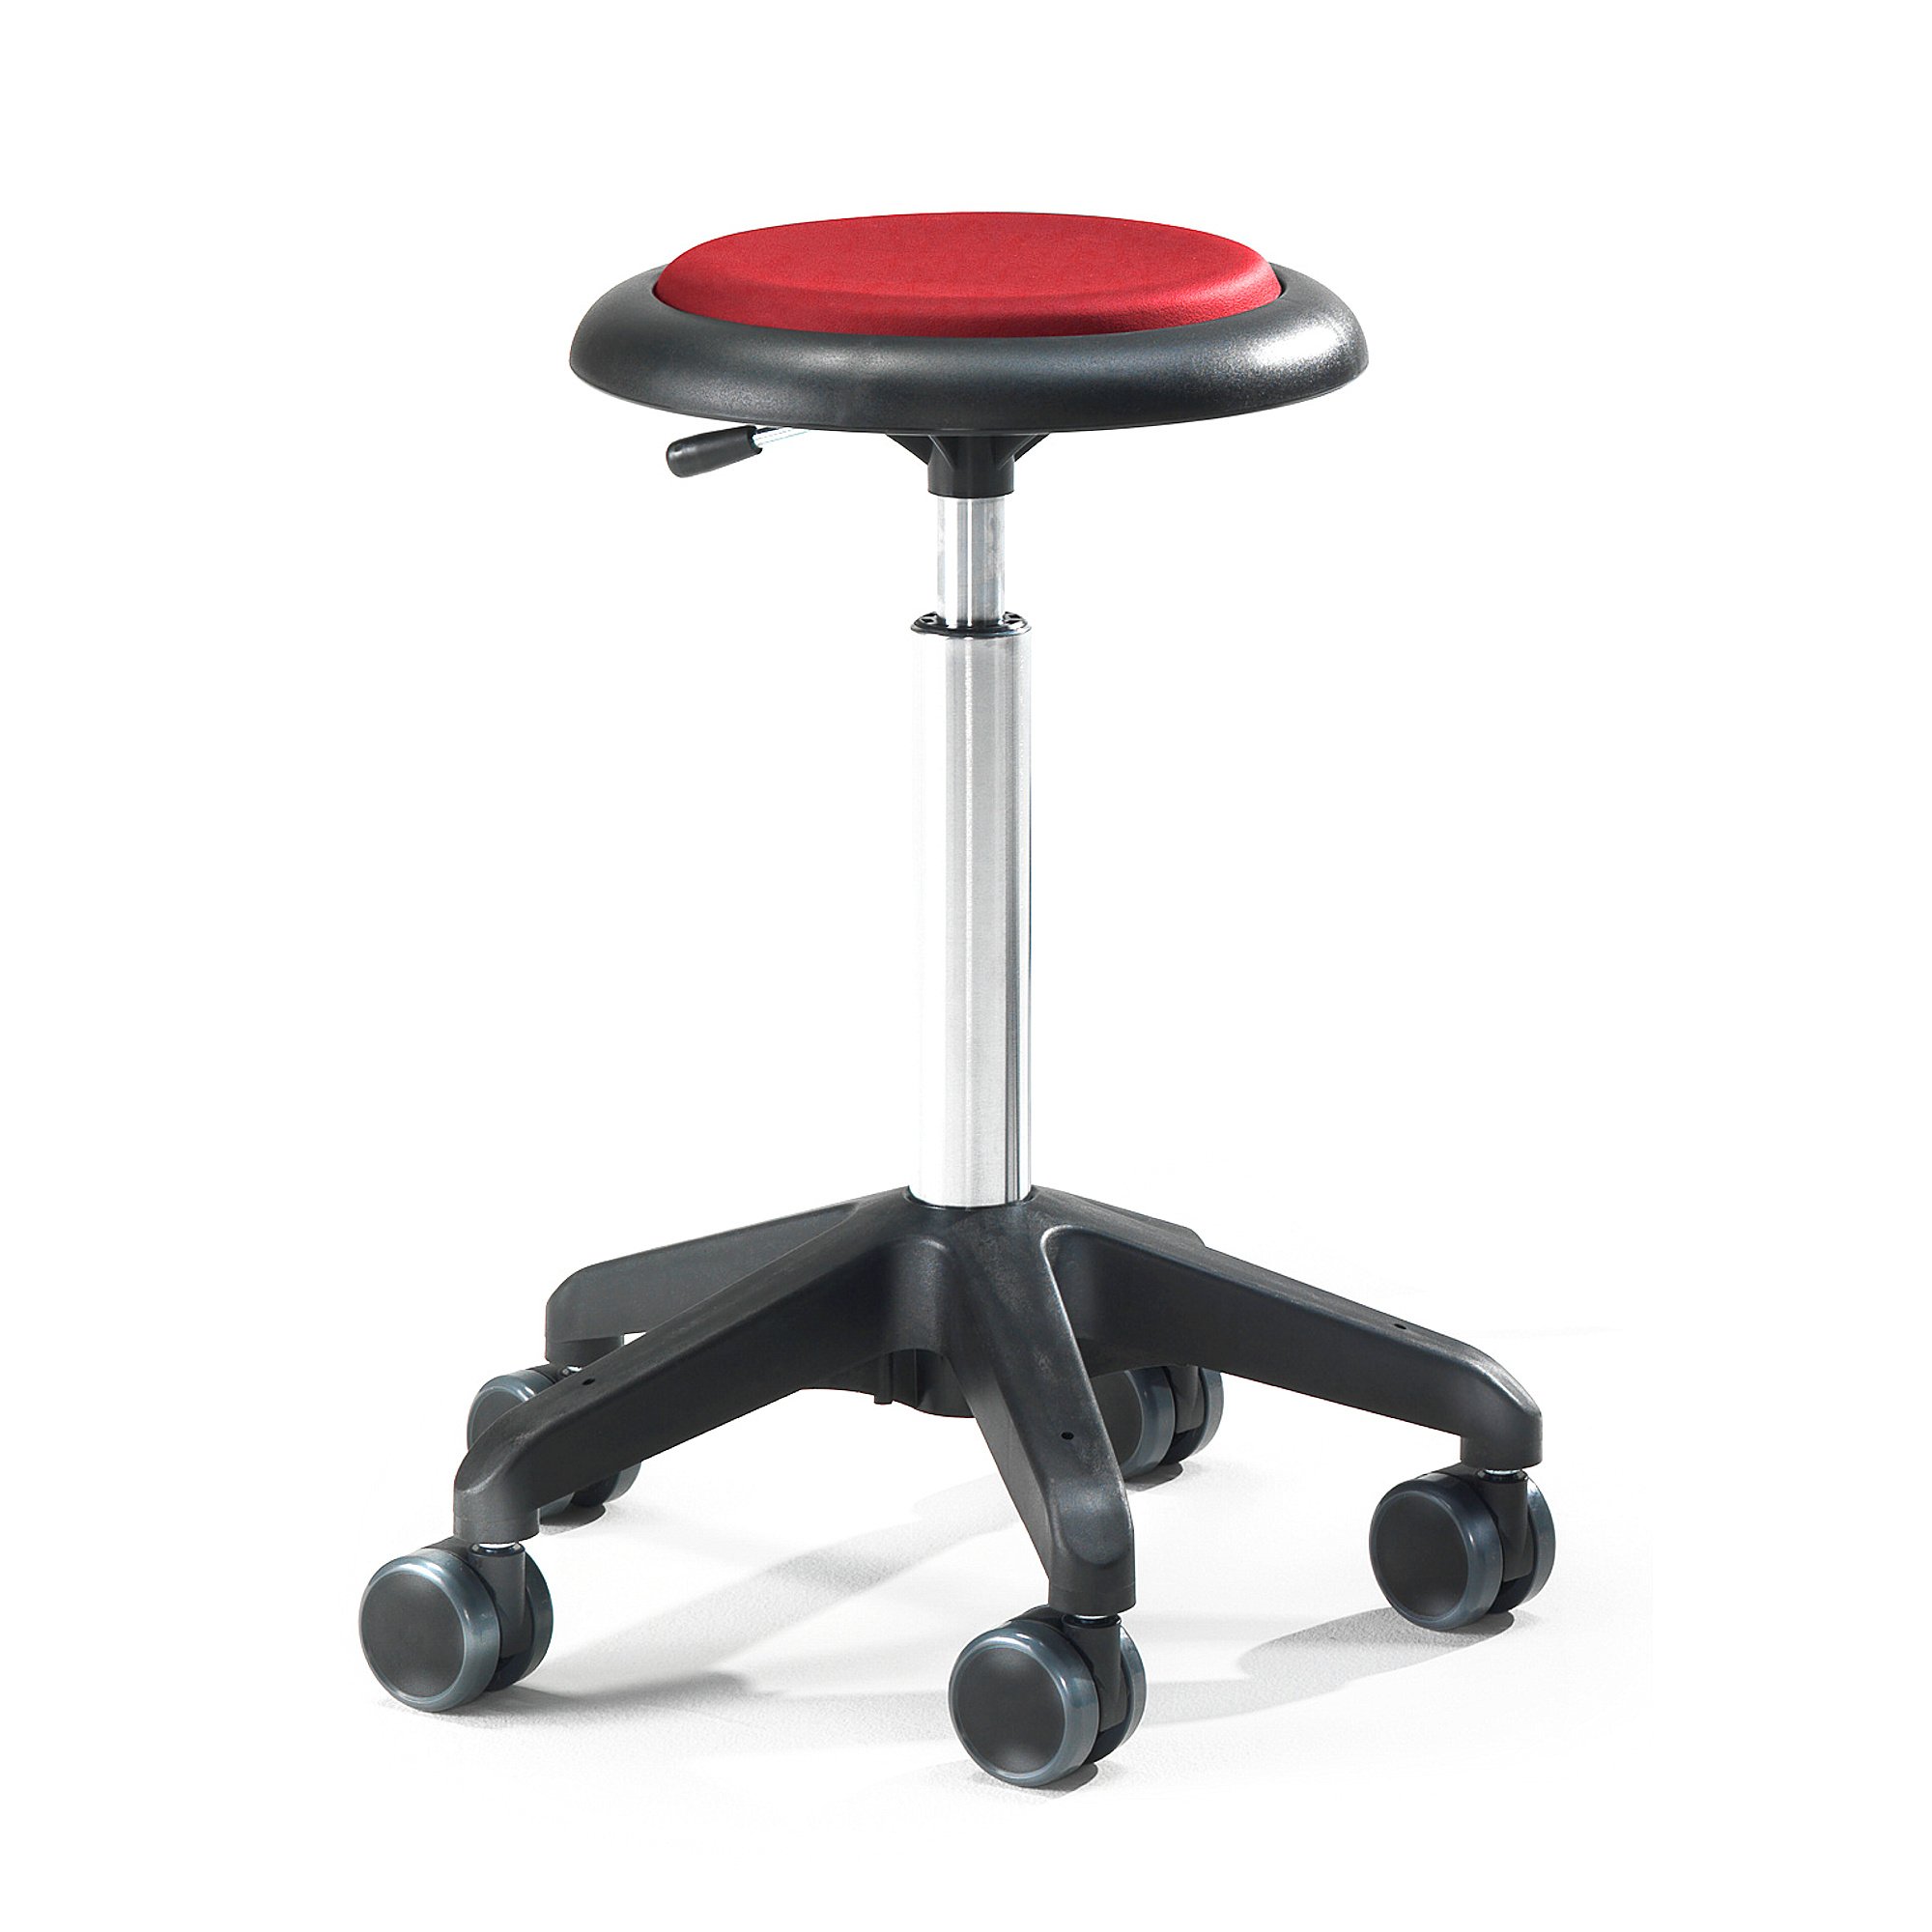 E-shop Pracovná dielenská stolička DIEGO, výška 540-730 mm, mikrovlákno, červená